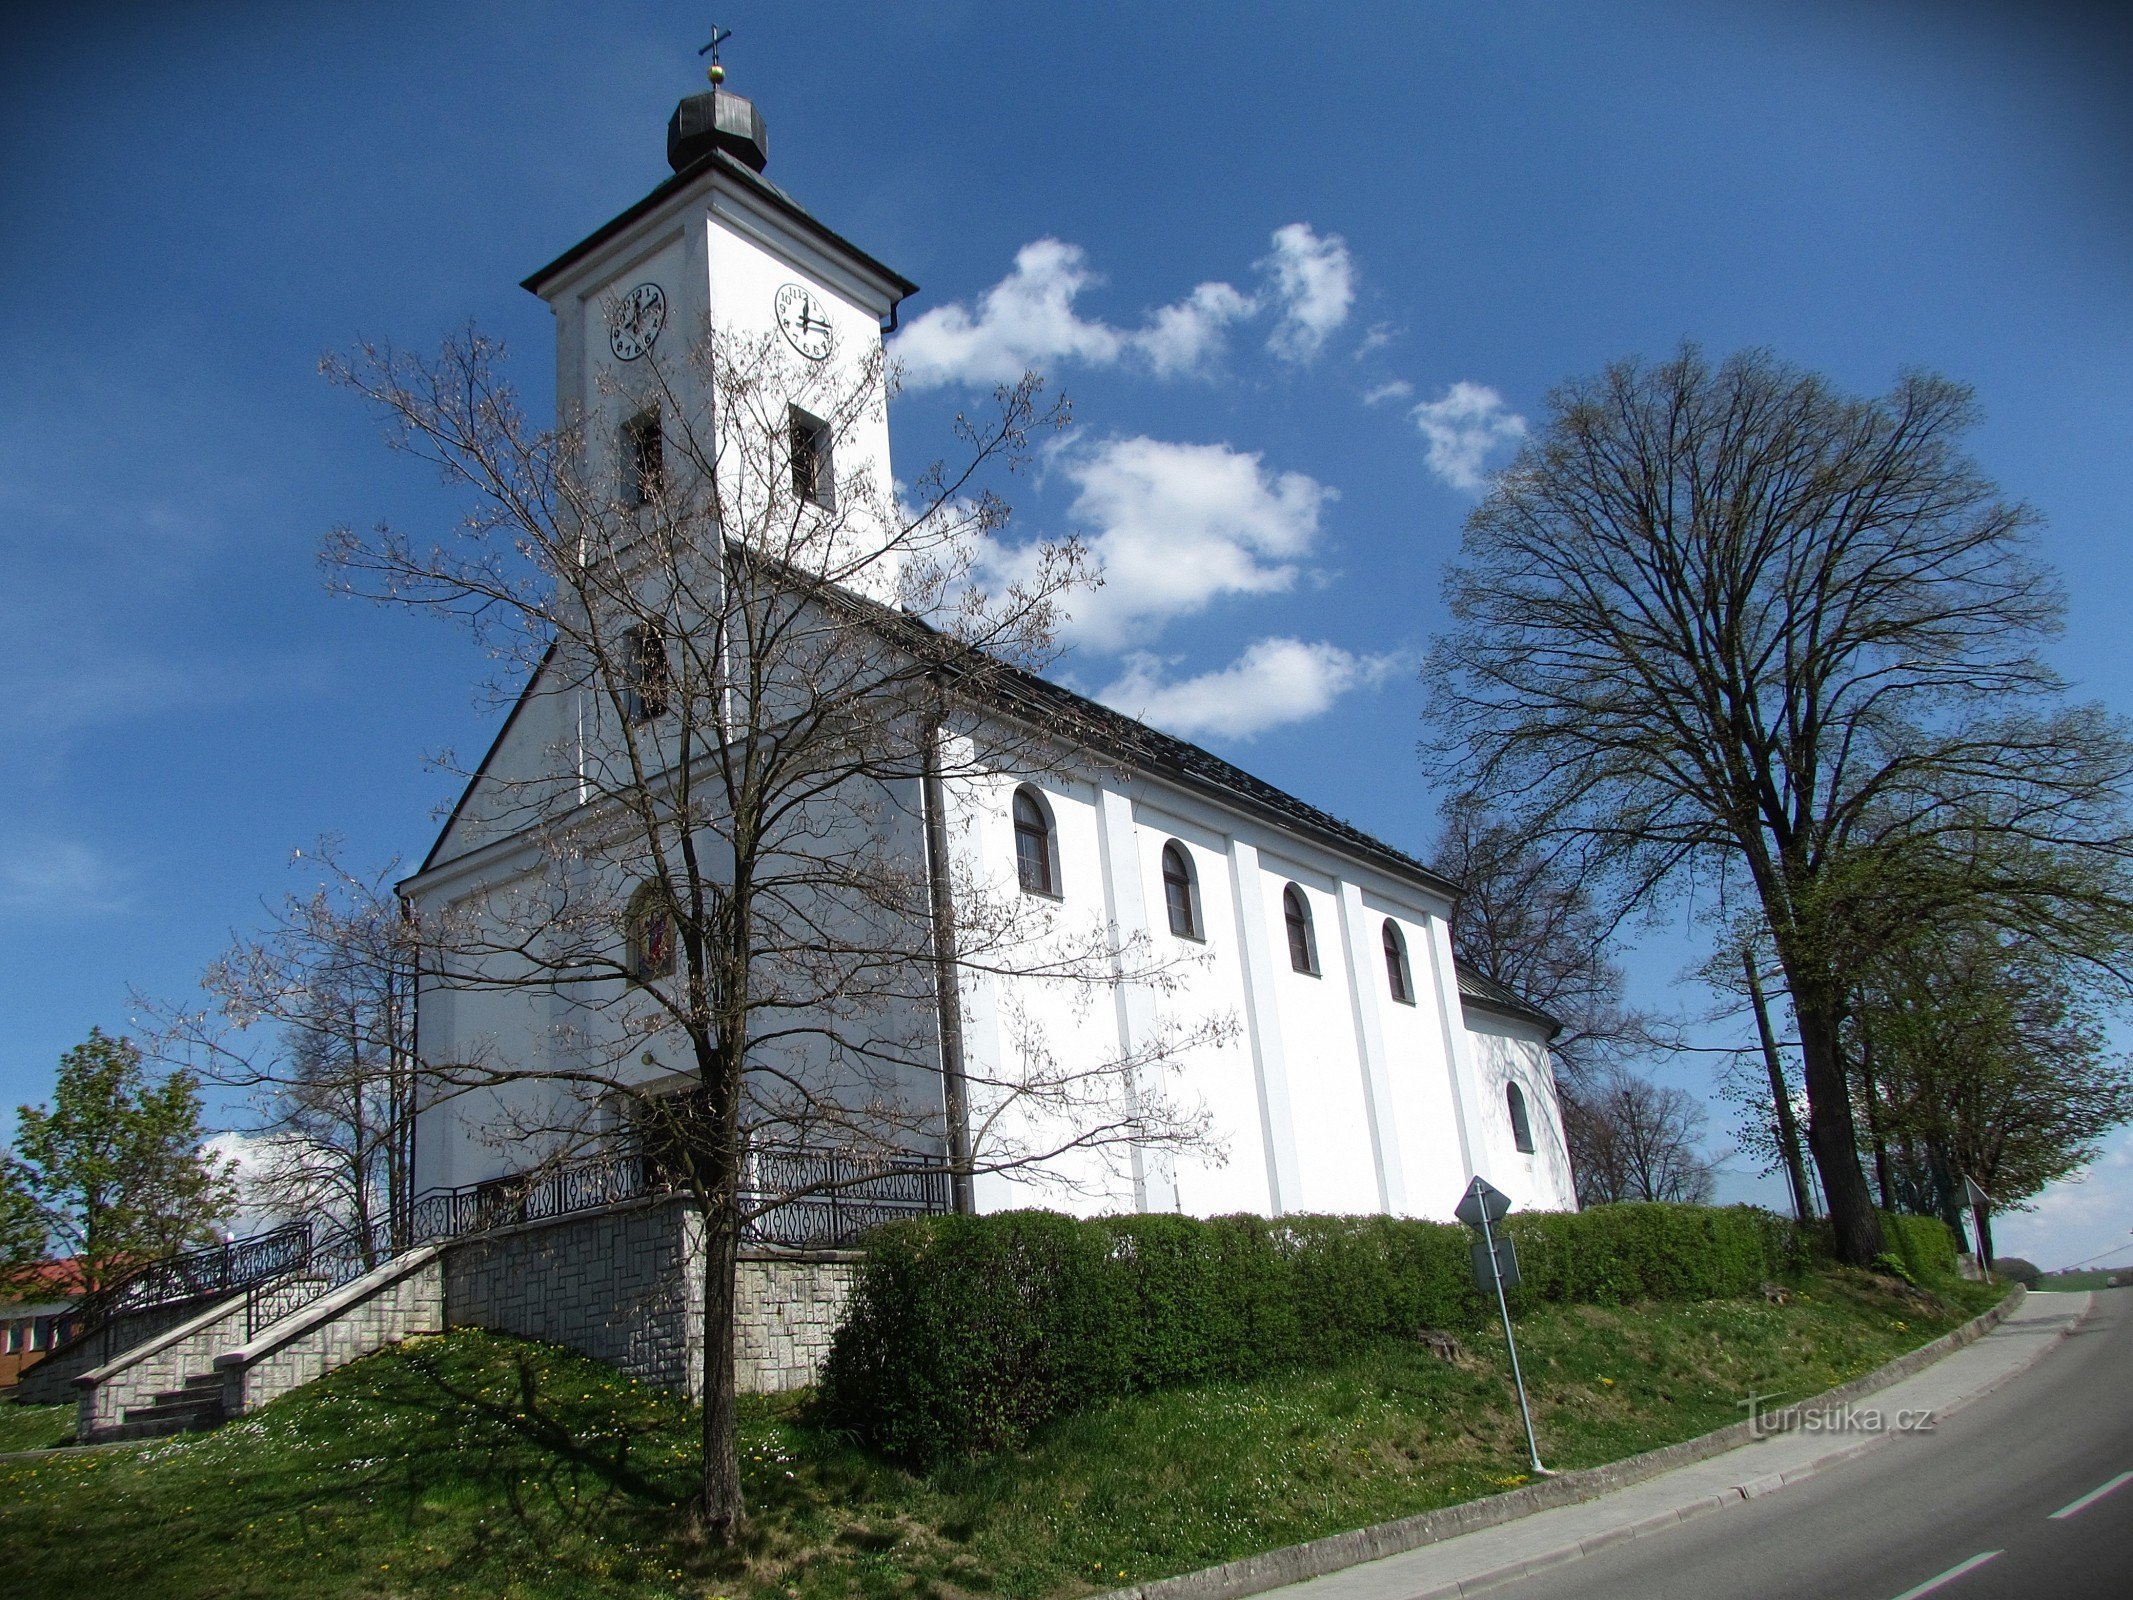 Slopné - crkva sv. Roka